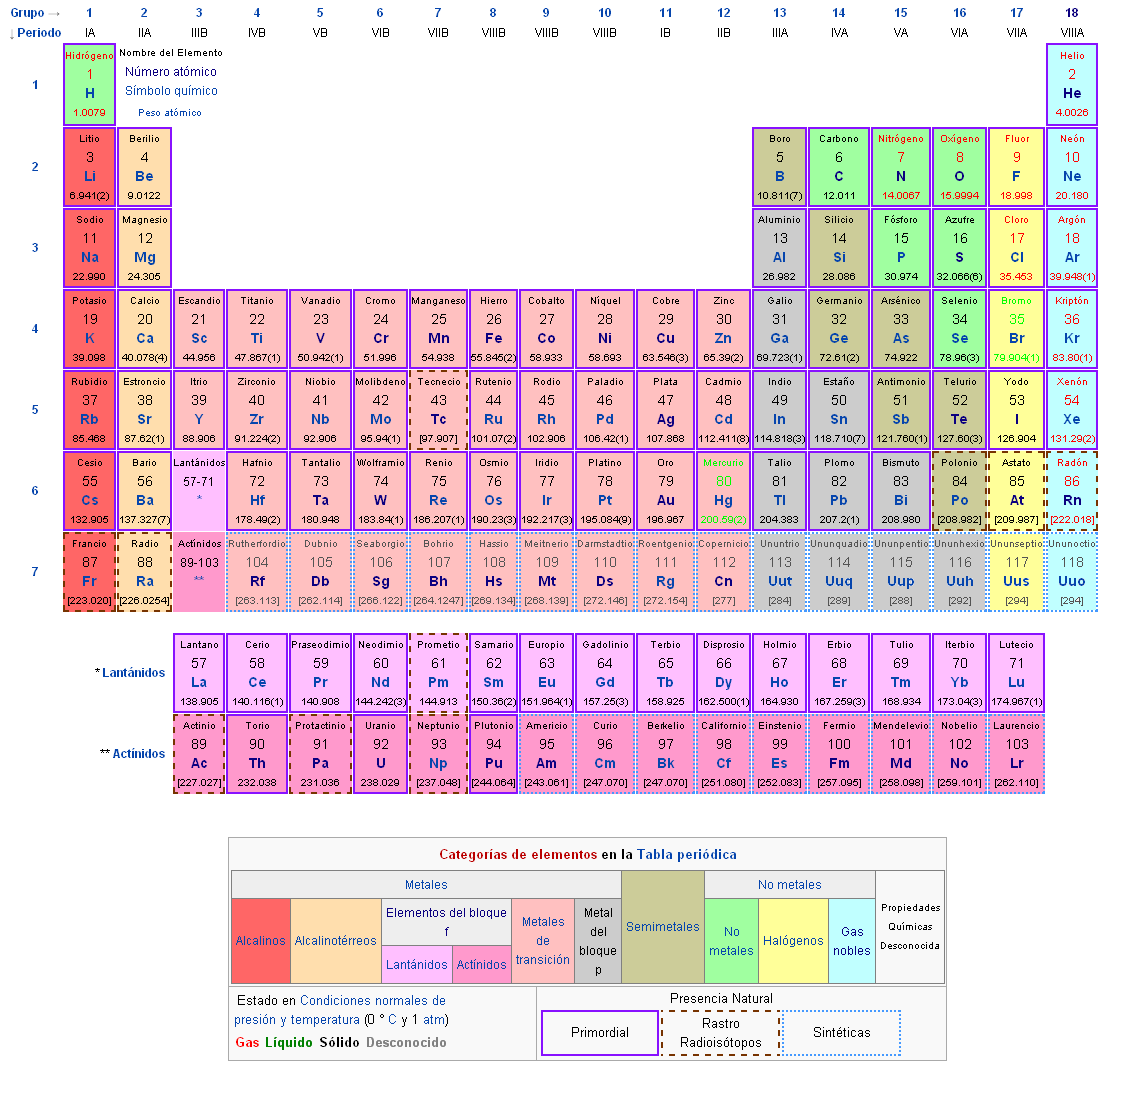 La tabla peri dica de los elementos conocidos hasta 2012 La tabla peri dica fue ideada por el  